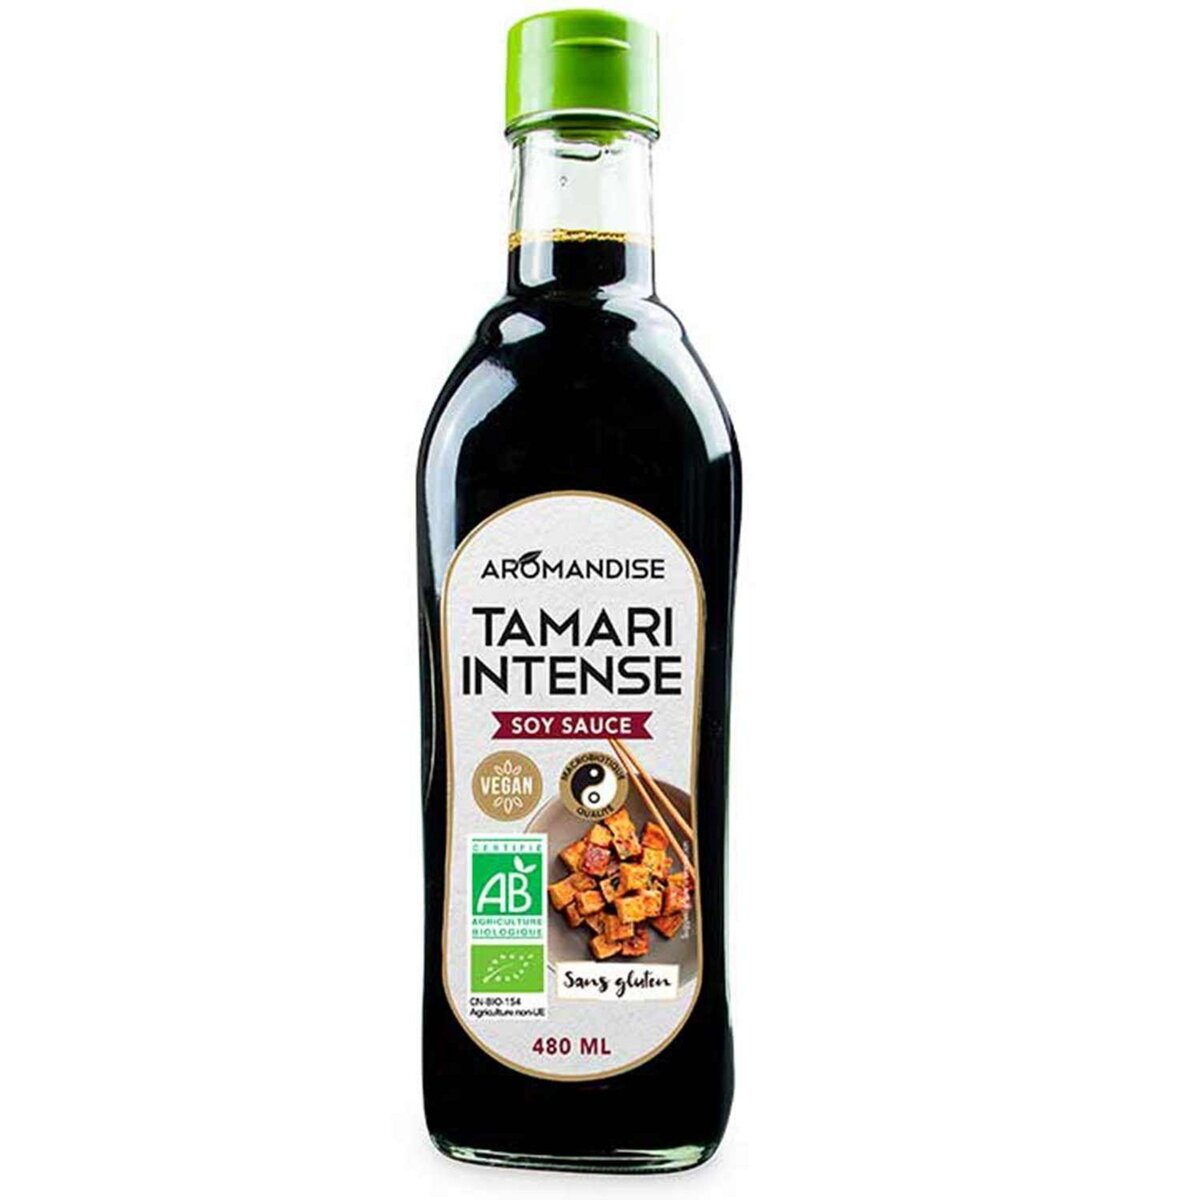 Tamari - sauce soja bio - Luce